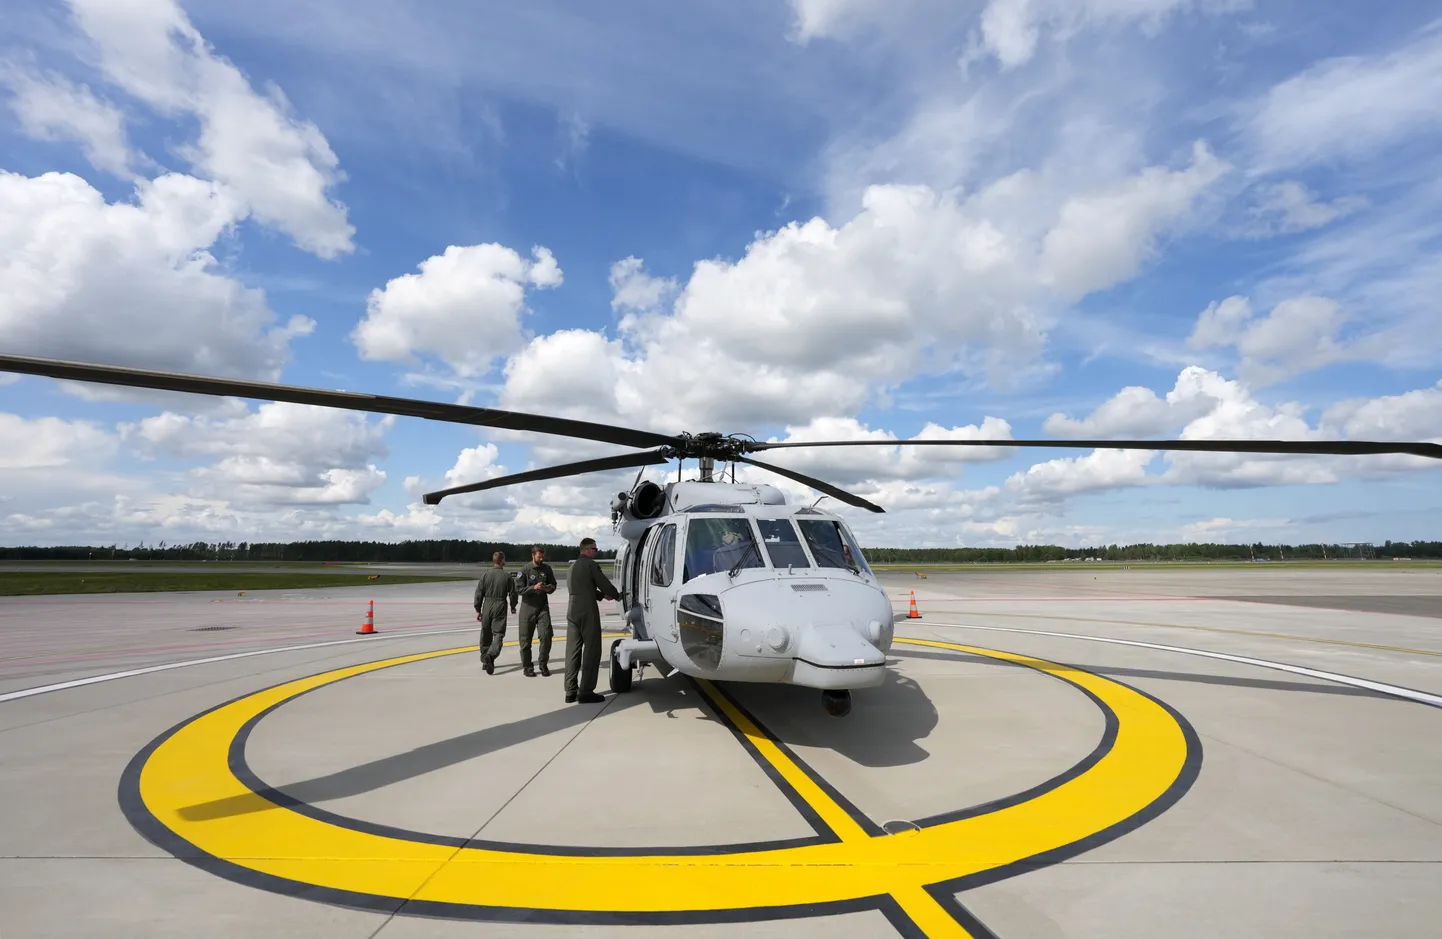 "Black Hawk" helikopters starptautiskās lidostas "Rīga" jaunatklātajā heliportā (helikoptera nosēšanās laukumā).